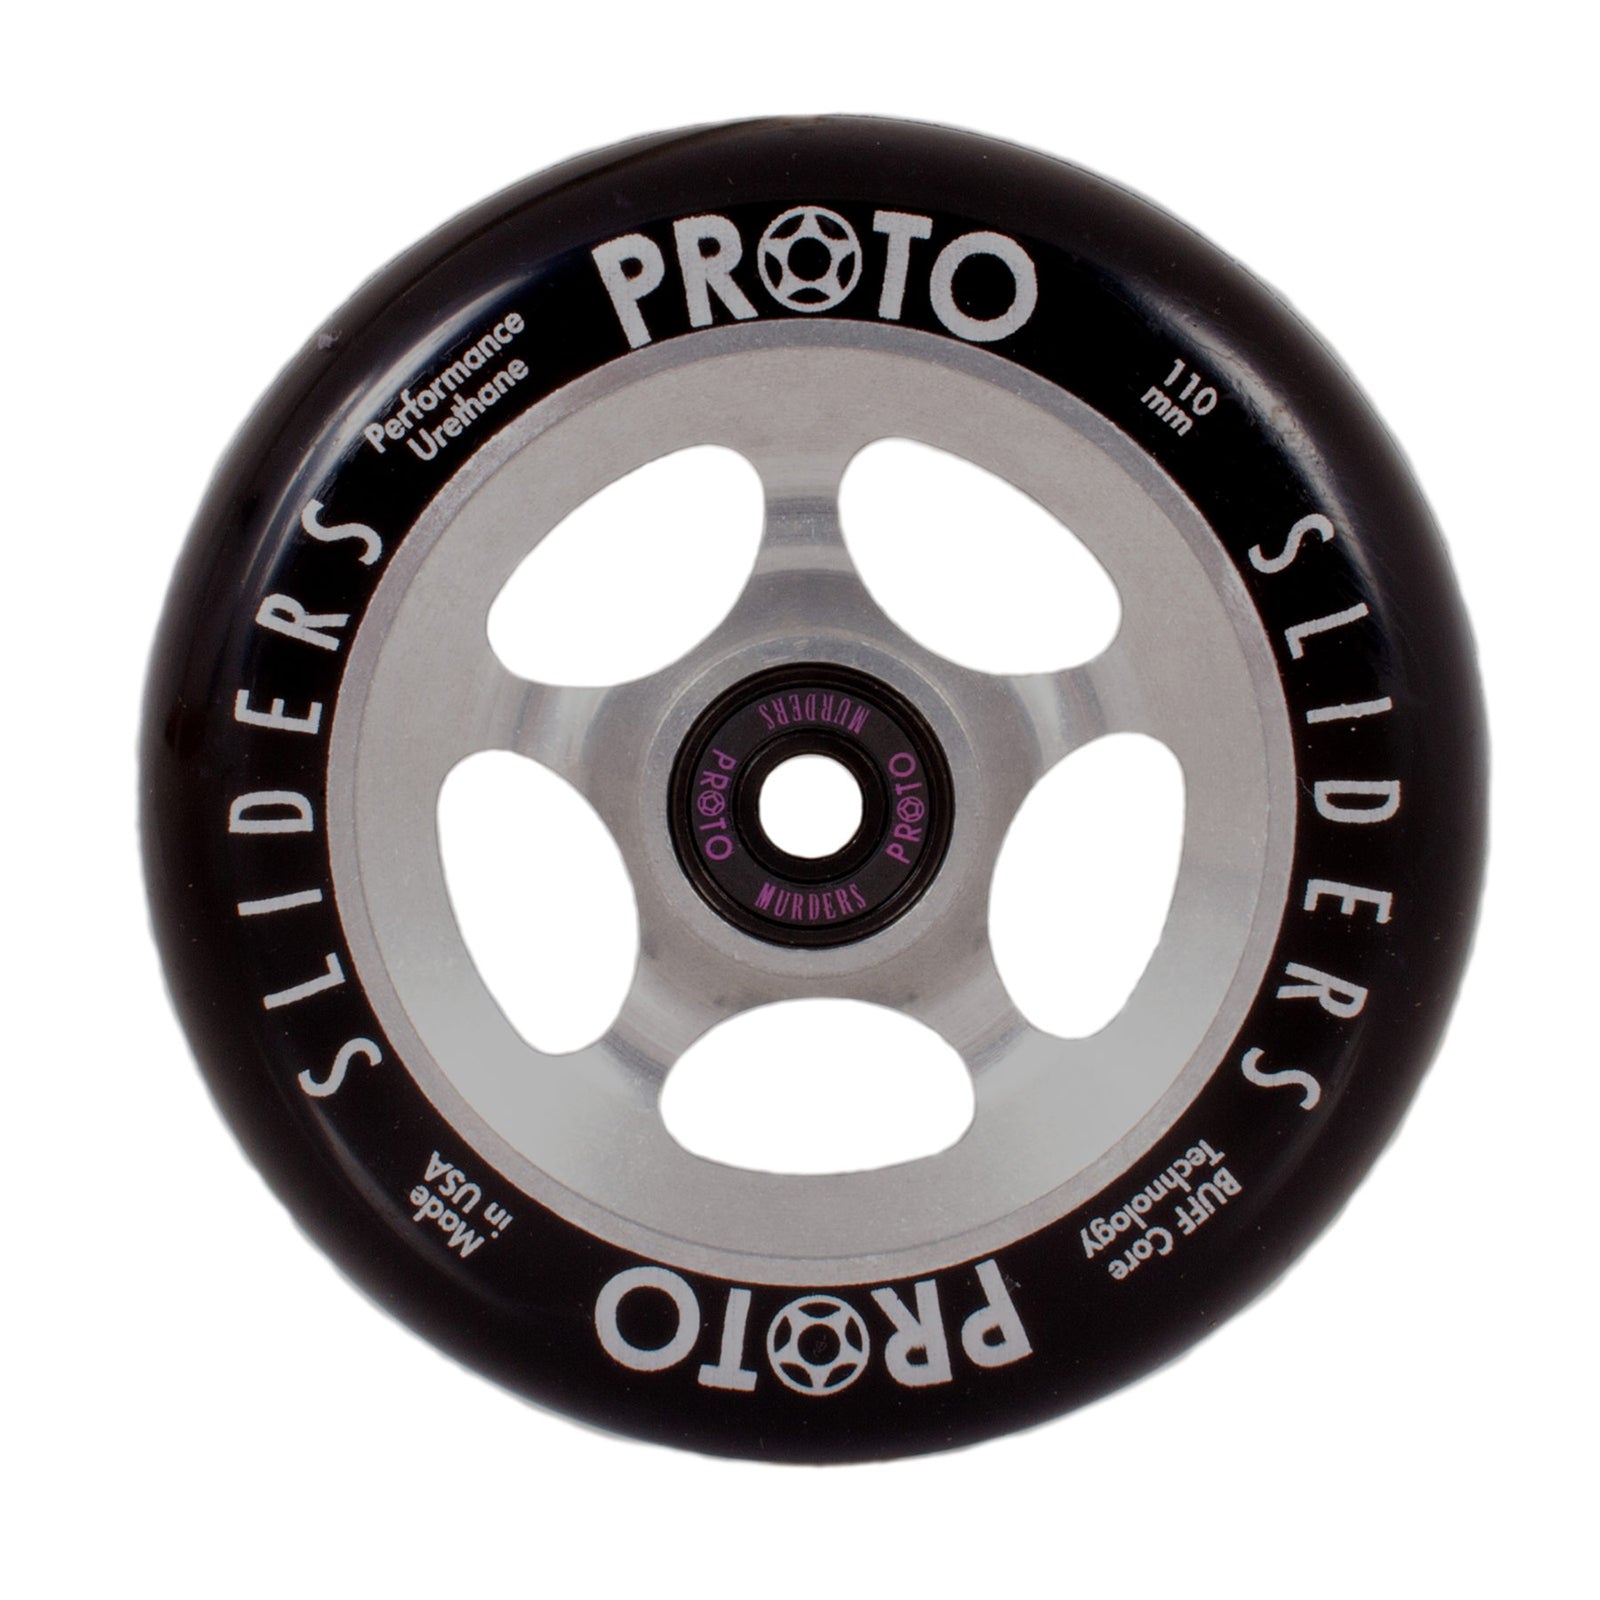 PROTO – Classic Sliders 110mm (Noir sur Chrome brut) Raw